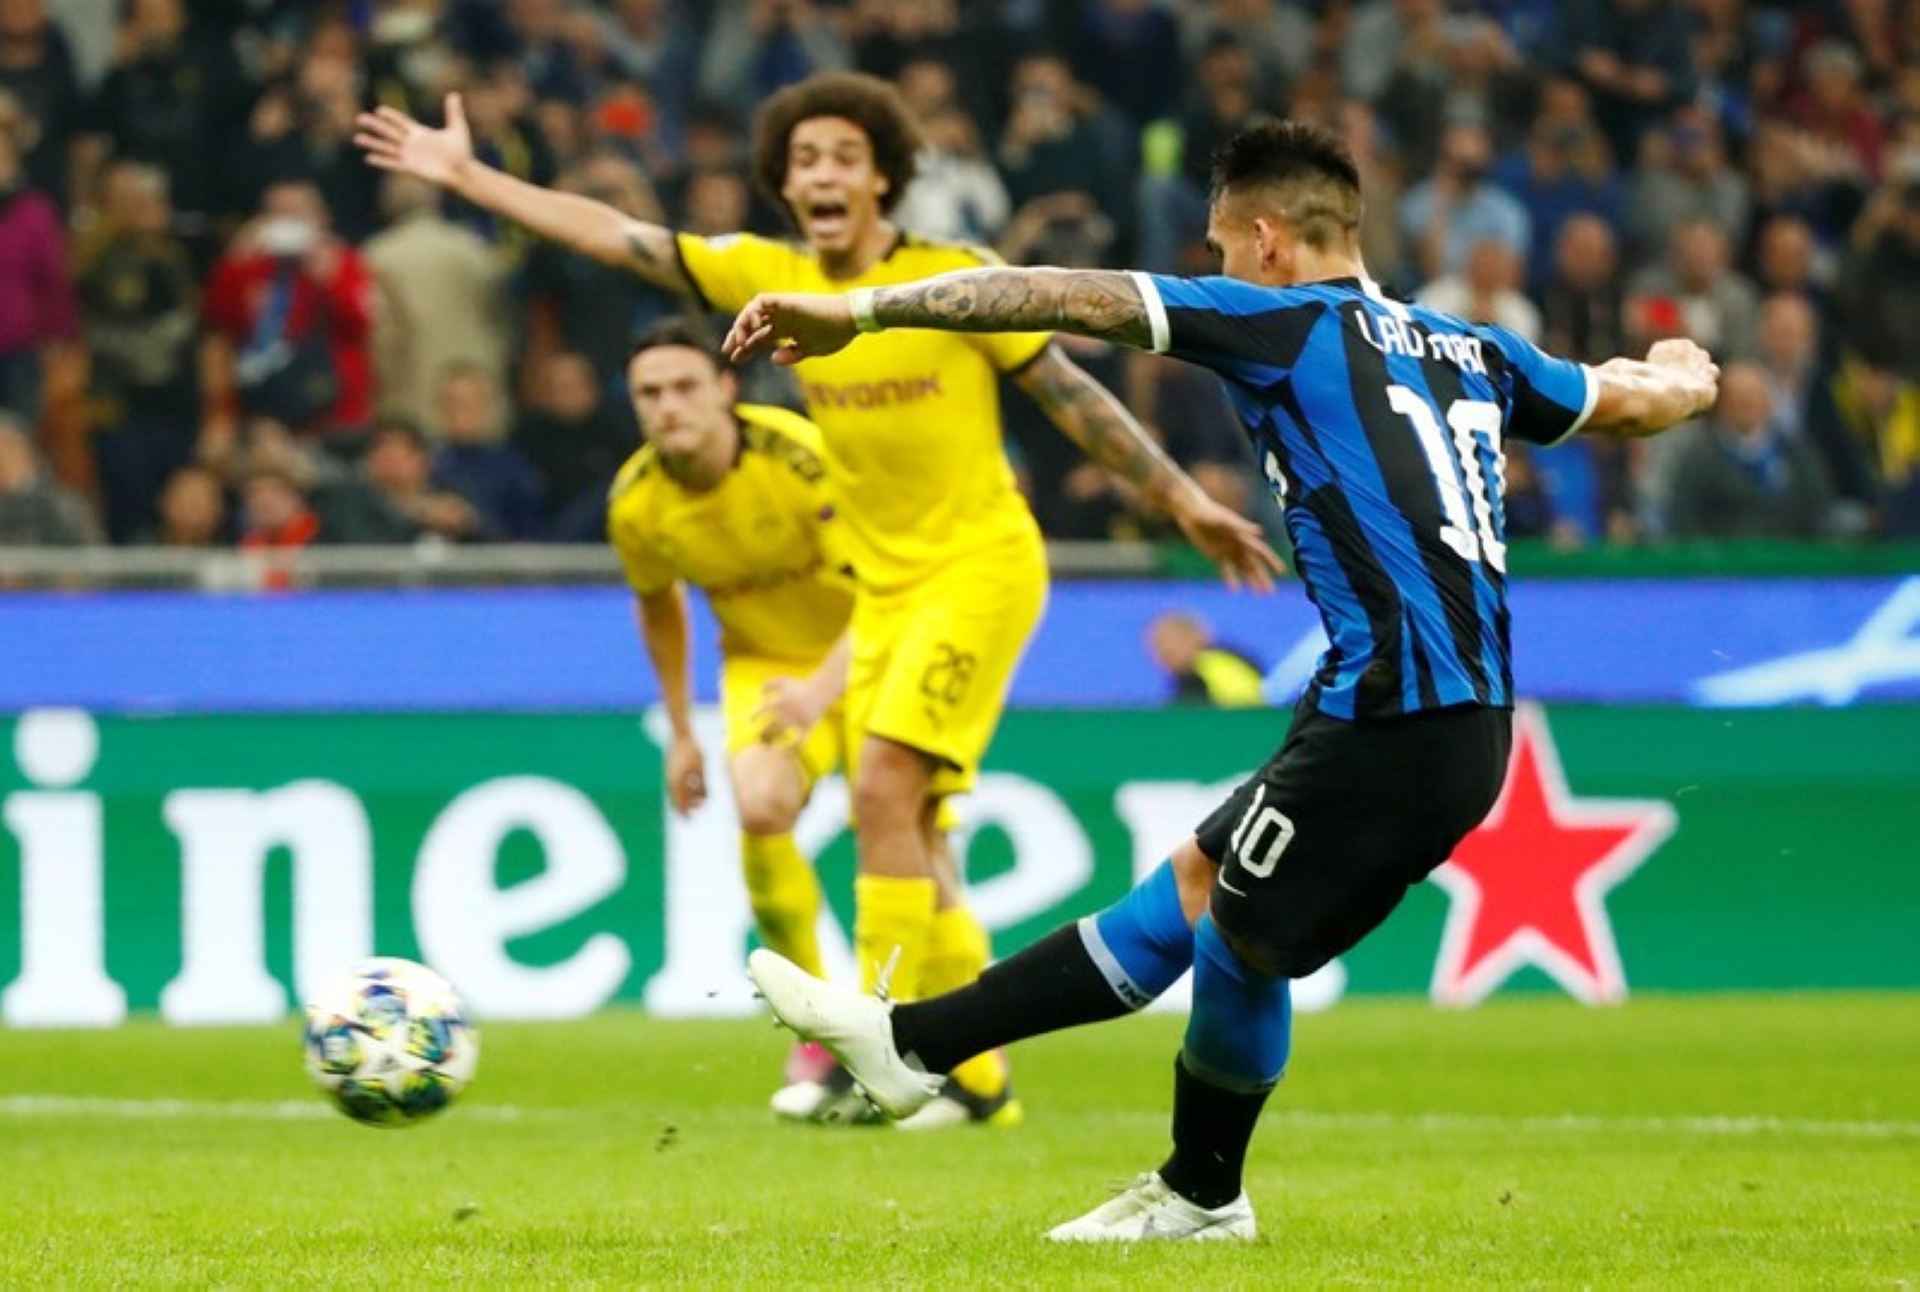 Dortmund vs Inter Milan